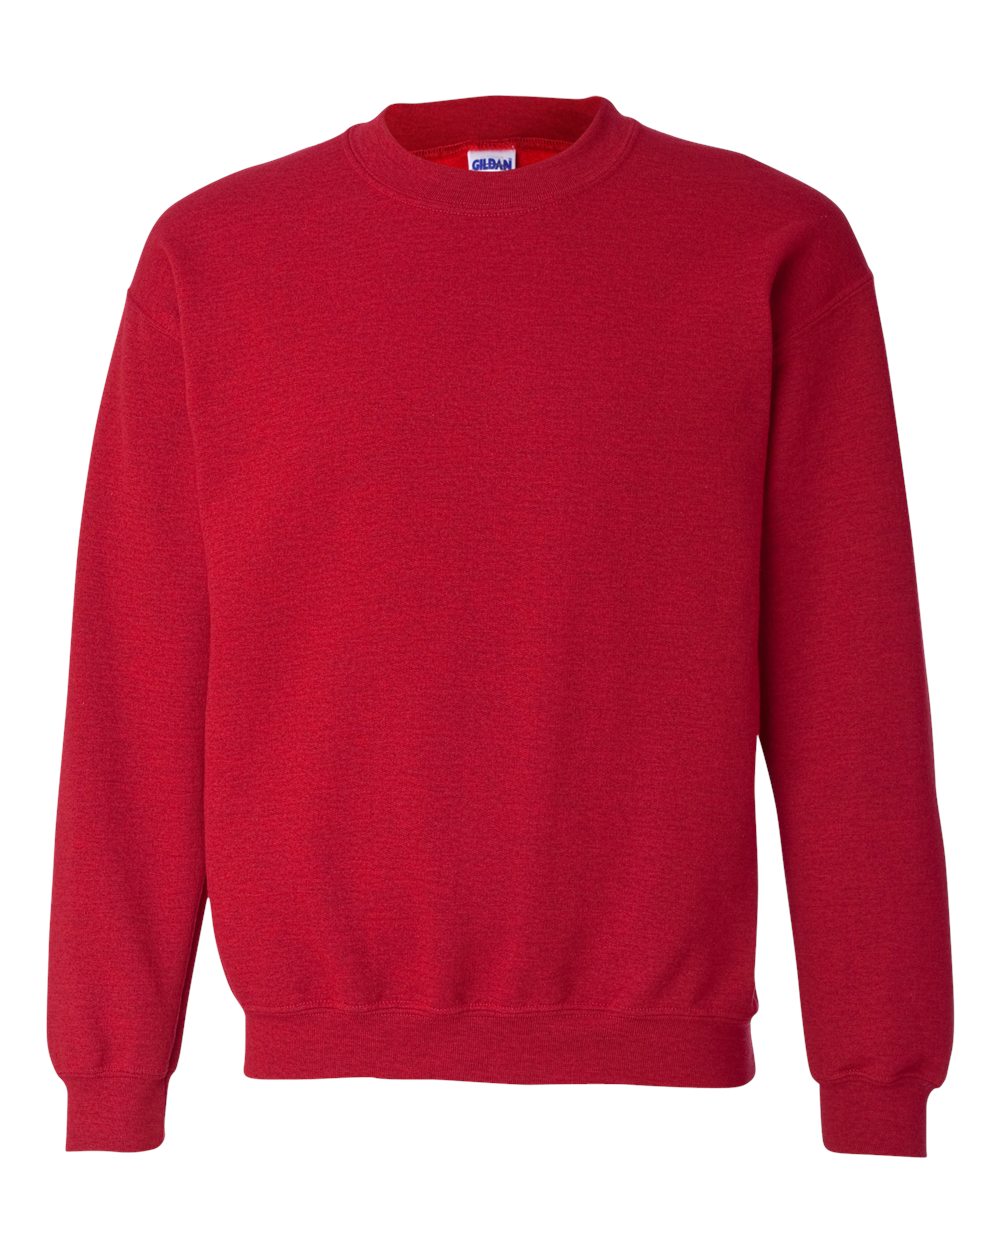 Gildan Crewneck Sweatshirt (18000) in Antique Cherry Red